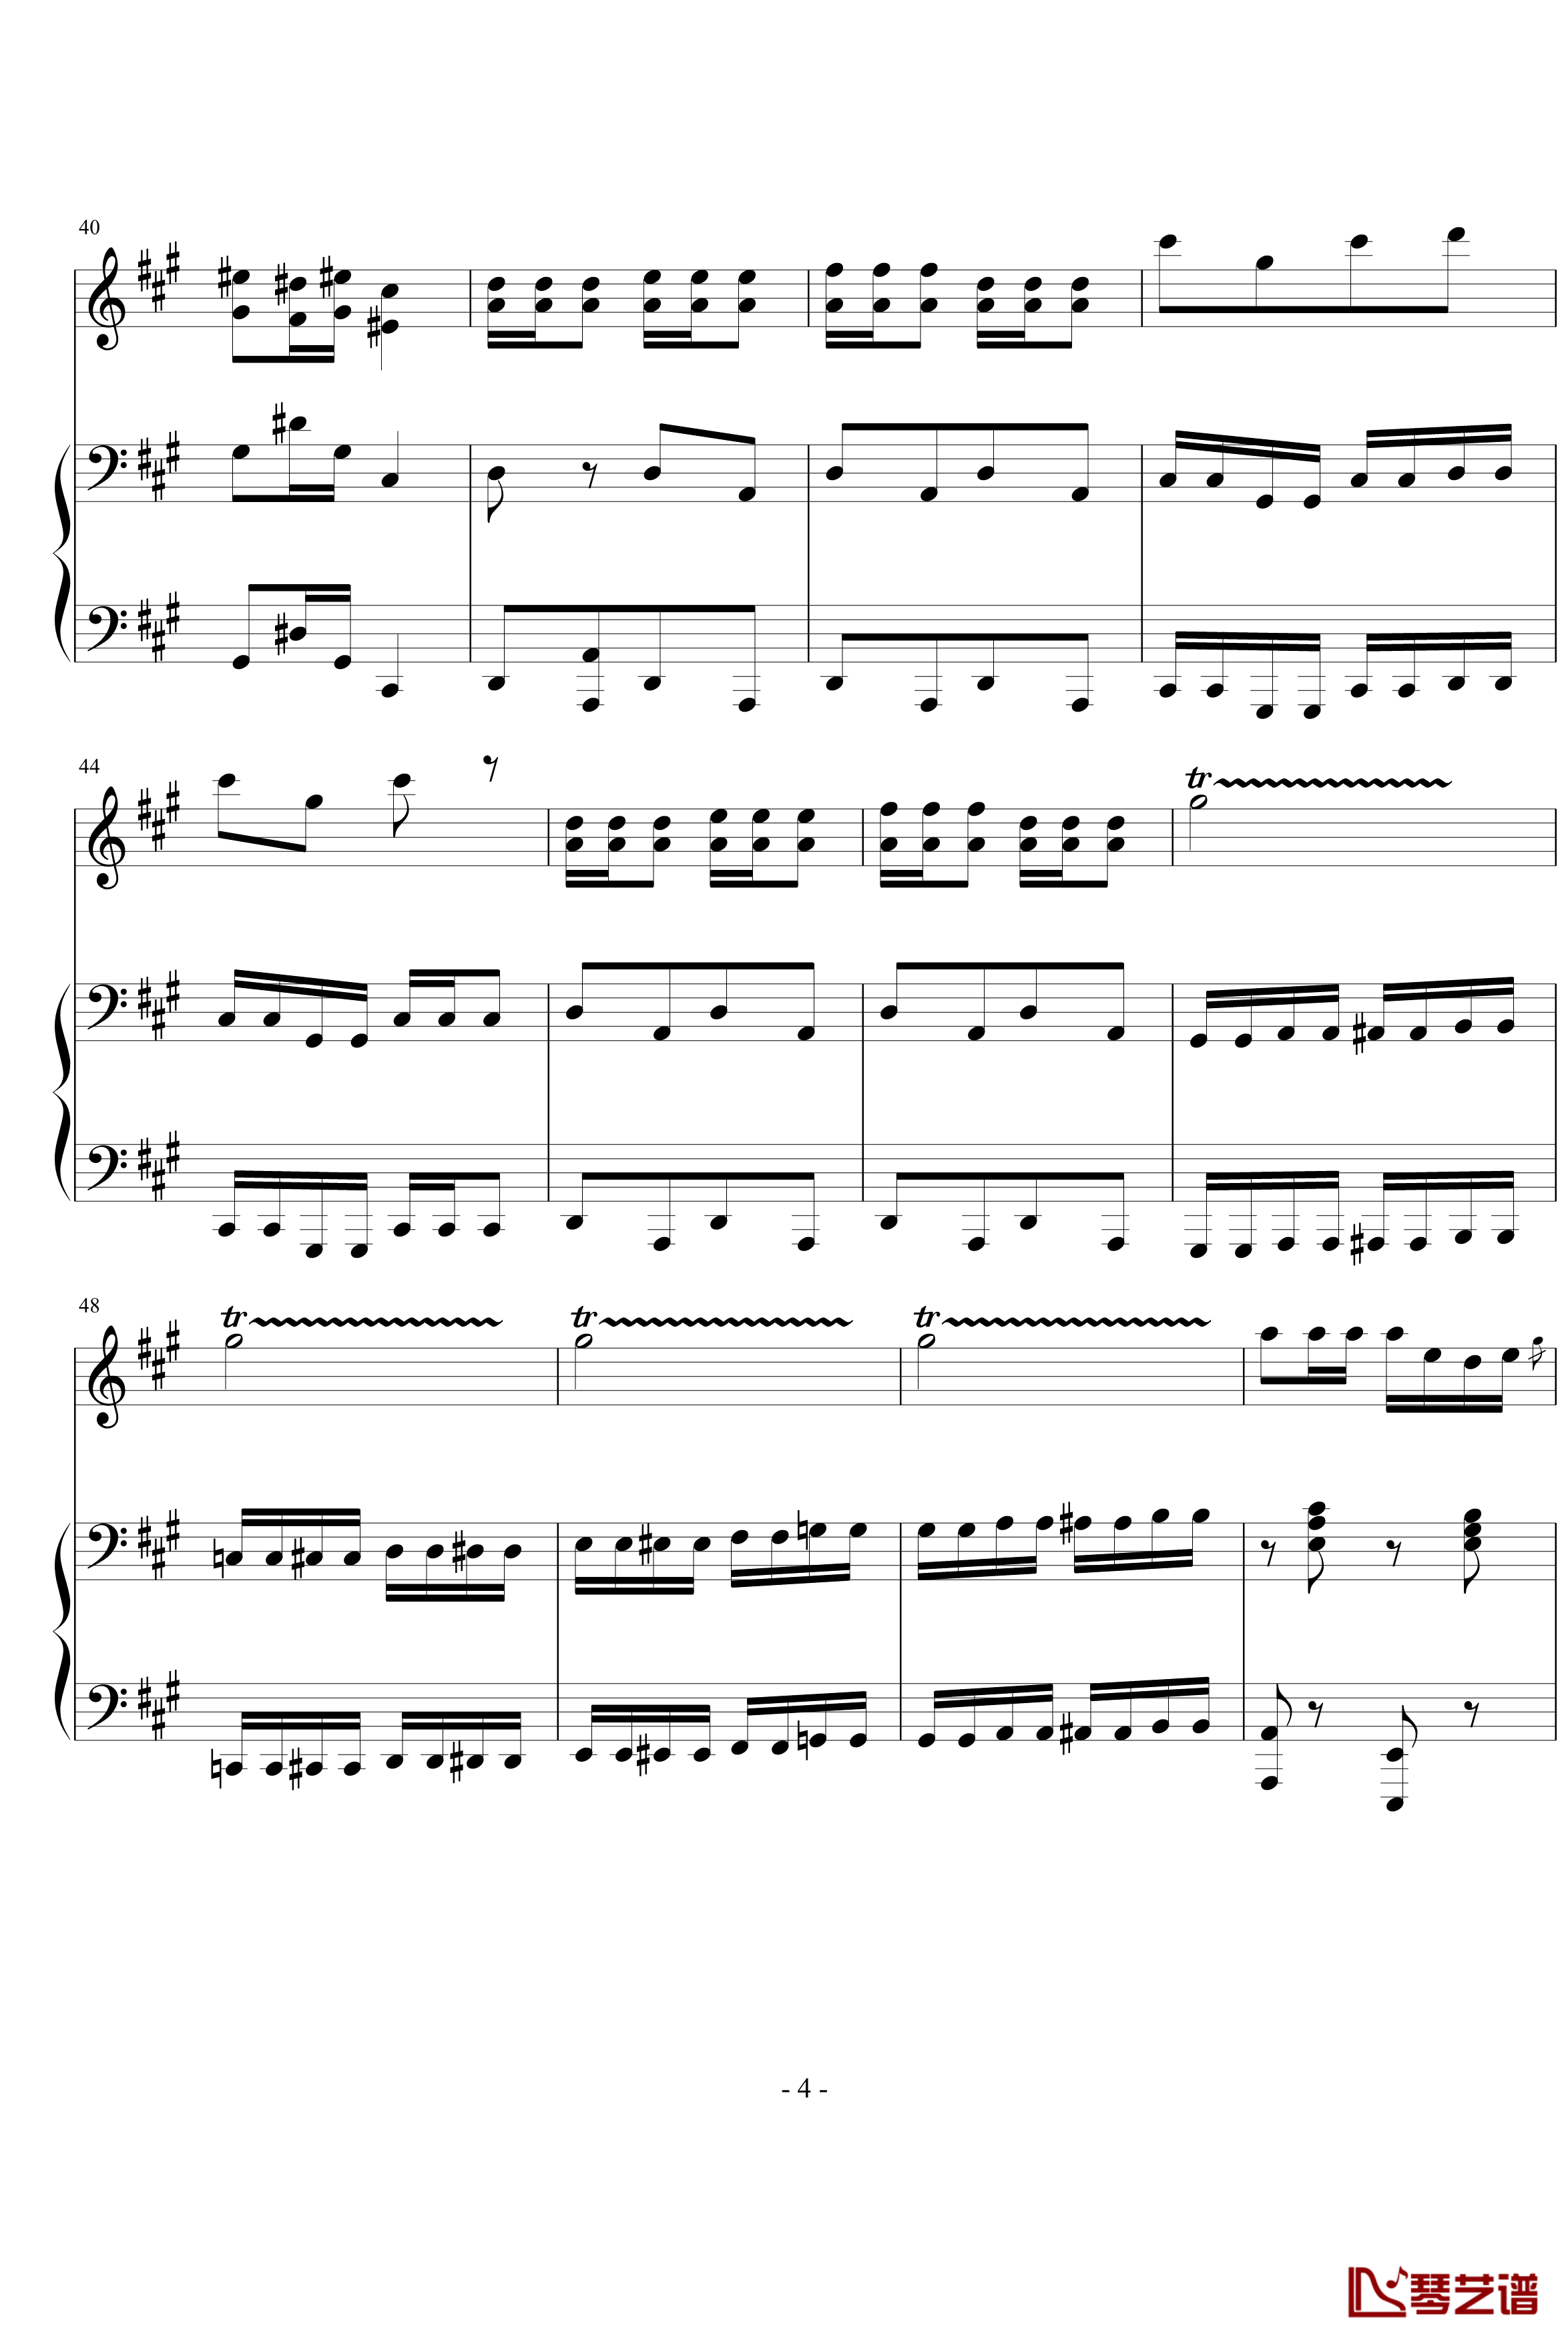 卡门木琴和钢琴钢琴谱-比才-Bizet4